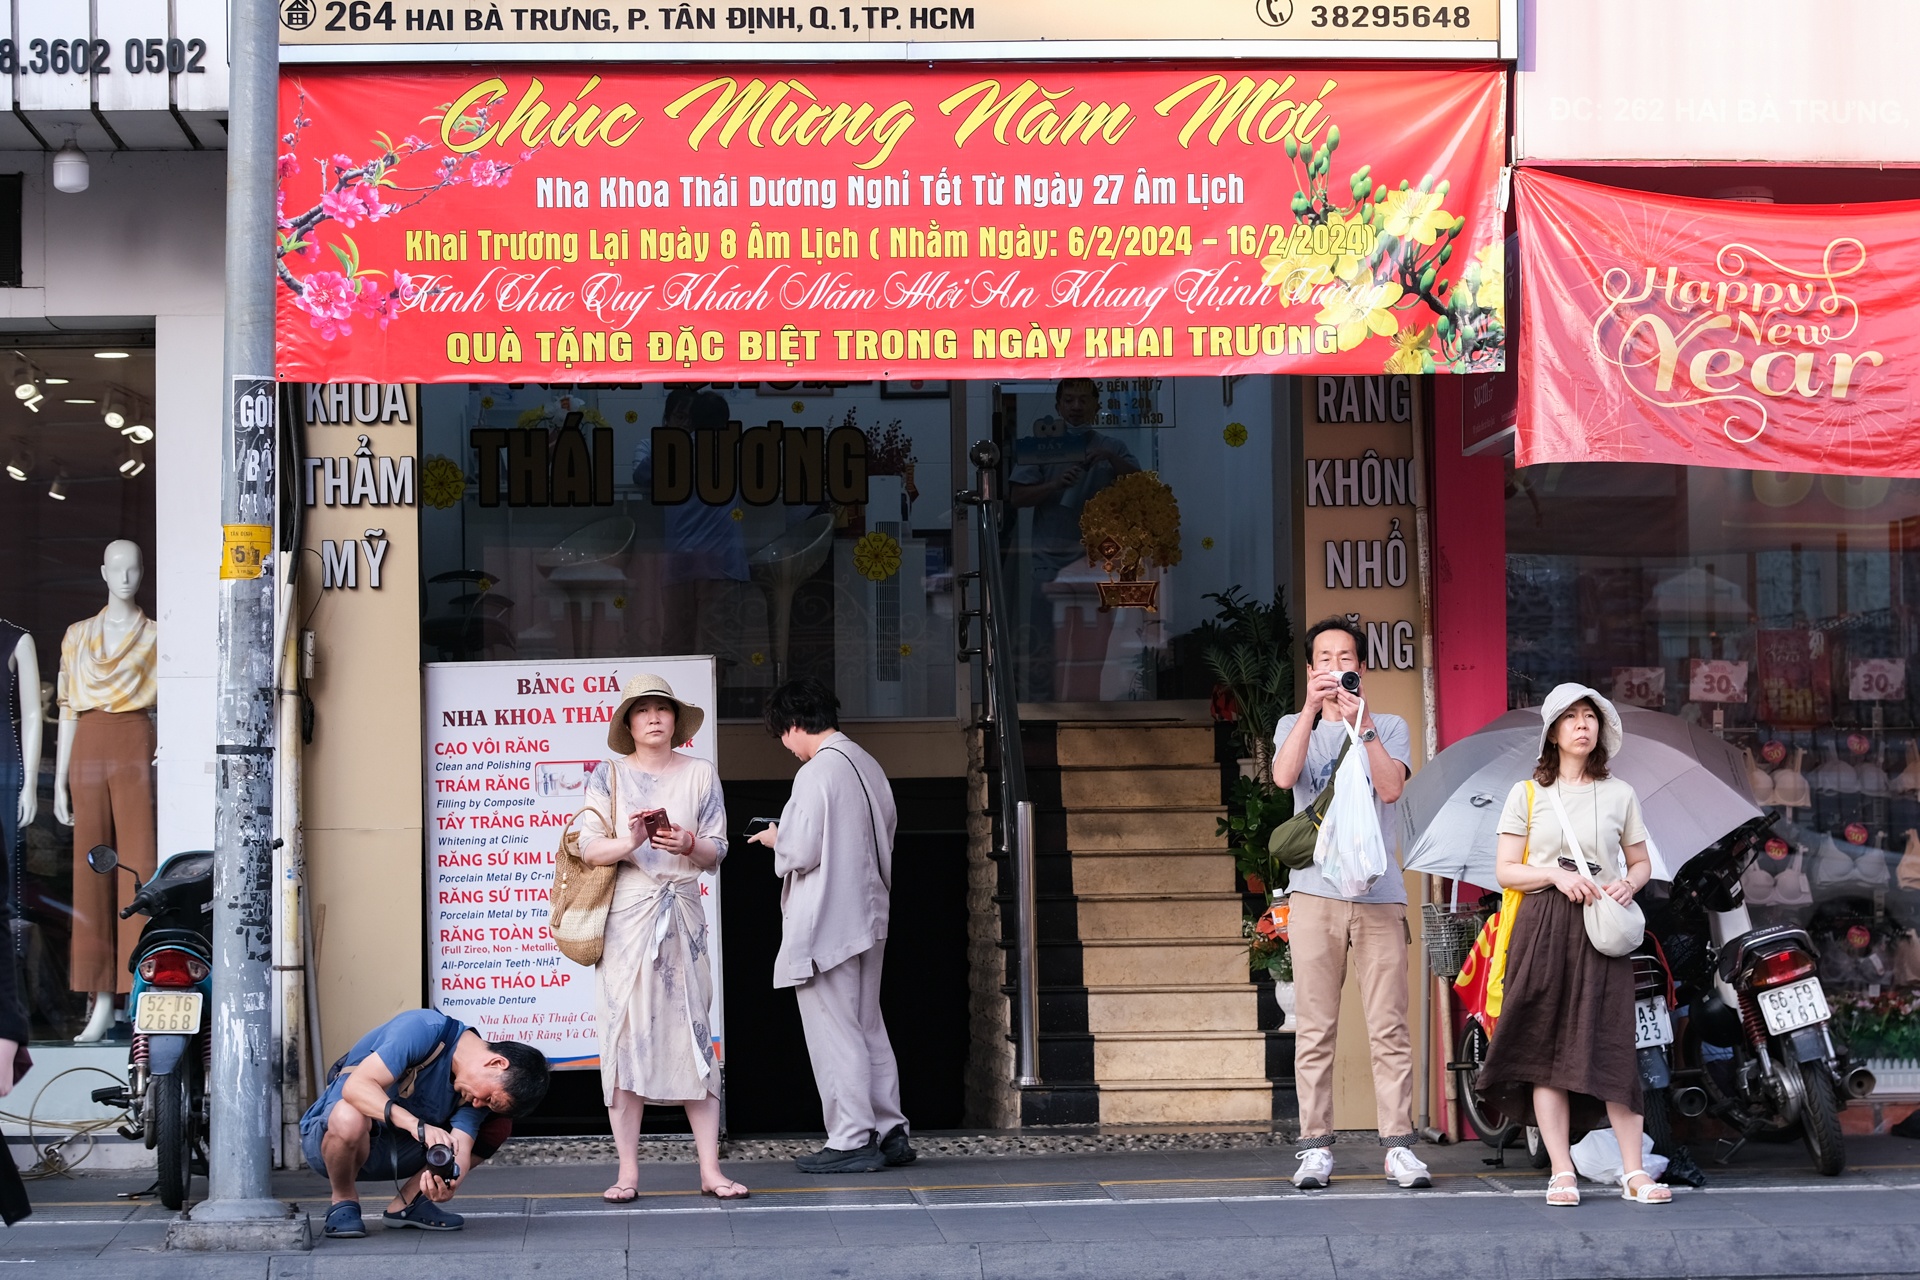 Hàng trăm khách châu Á đến nhà thờ Tân Định chụp ảnh mỗi ngày - ảnh 15